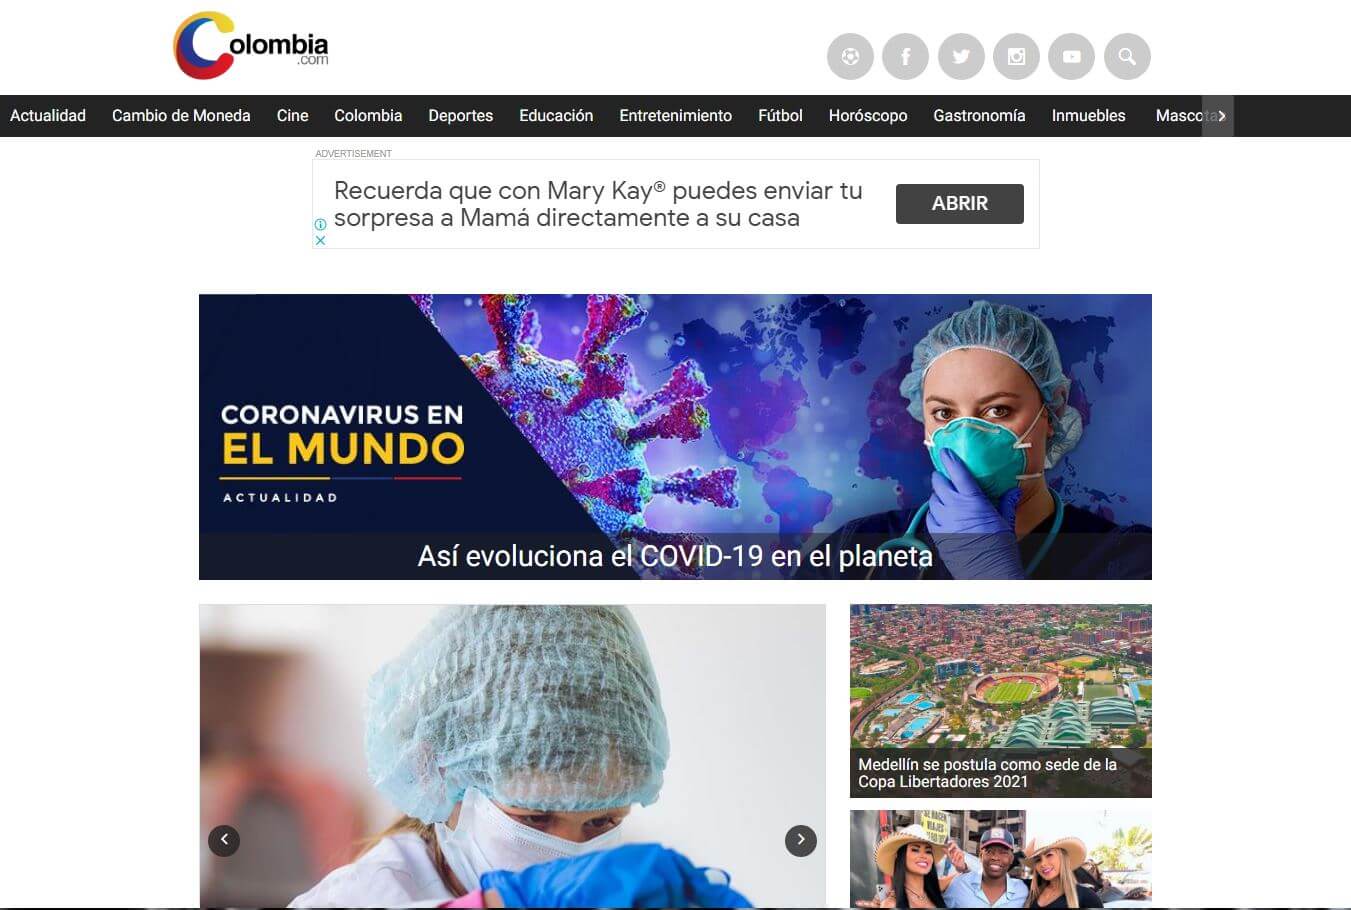 periodicos de colombia 30 colombia com website